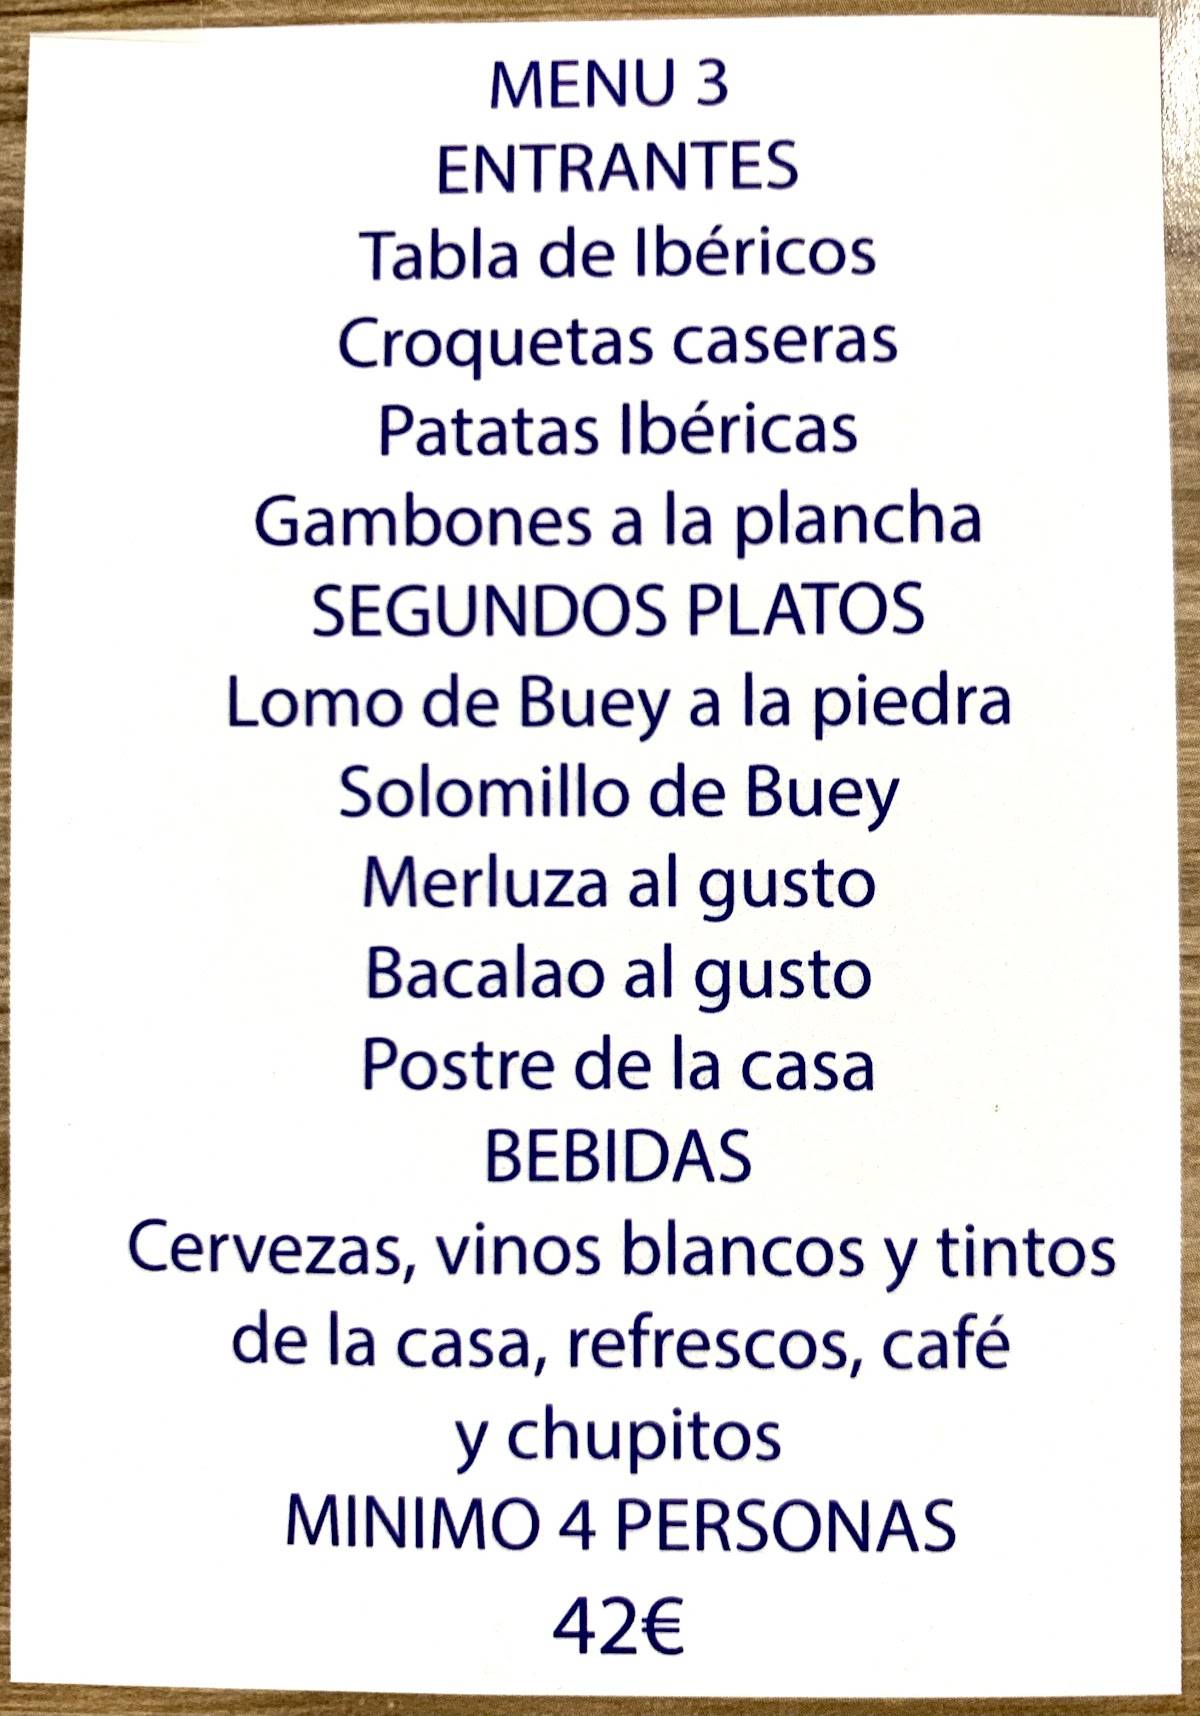 Actuación Están familiarizados camioneta Carta del restaurante Brasería Luso, Madrid, Calle del María Tubau